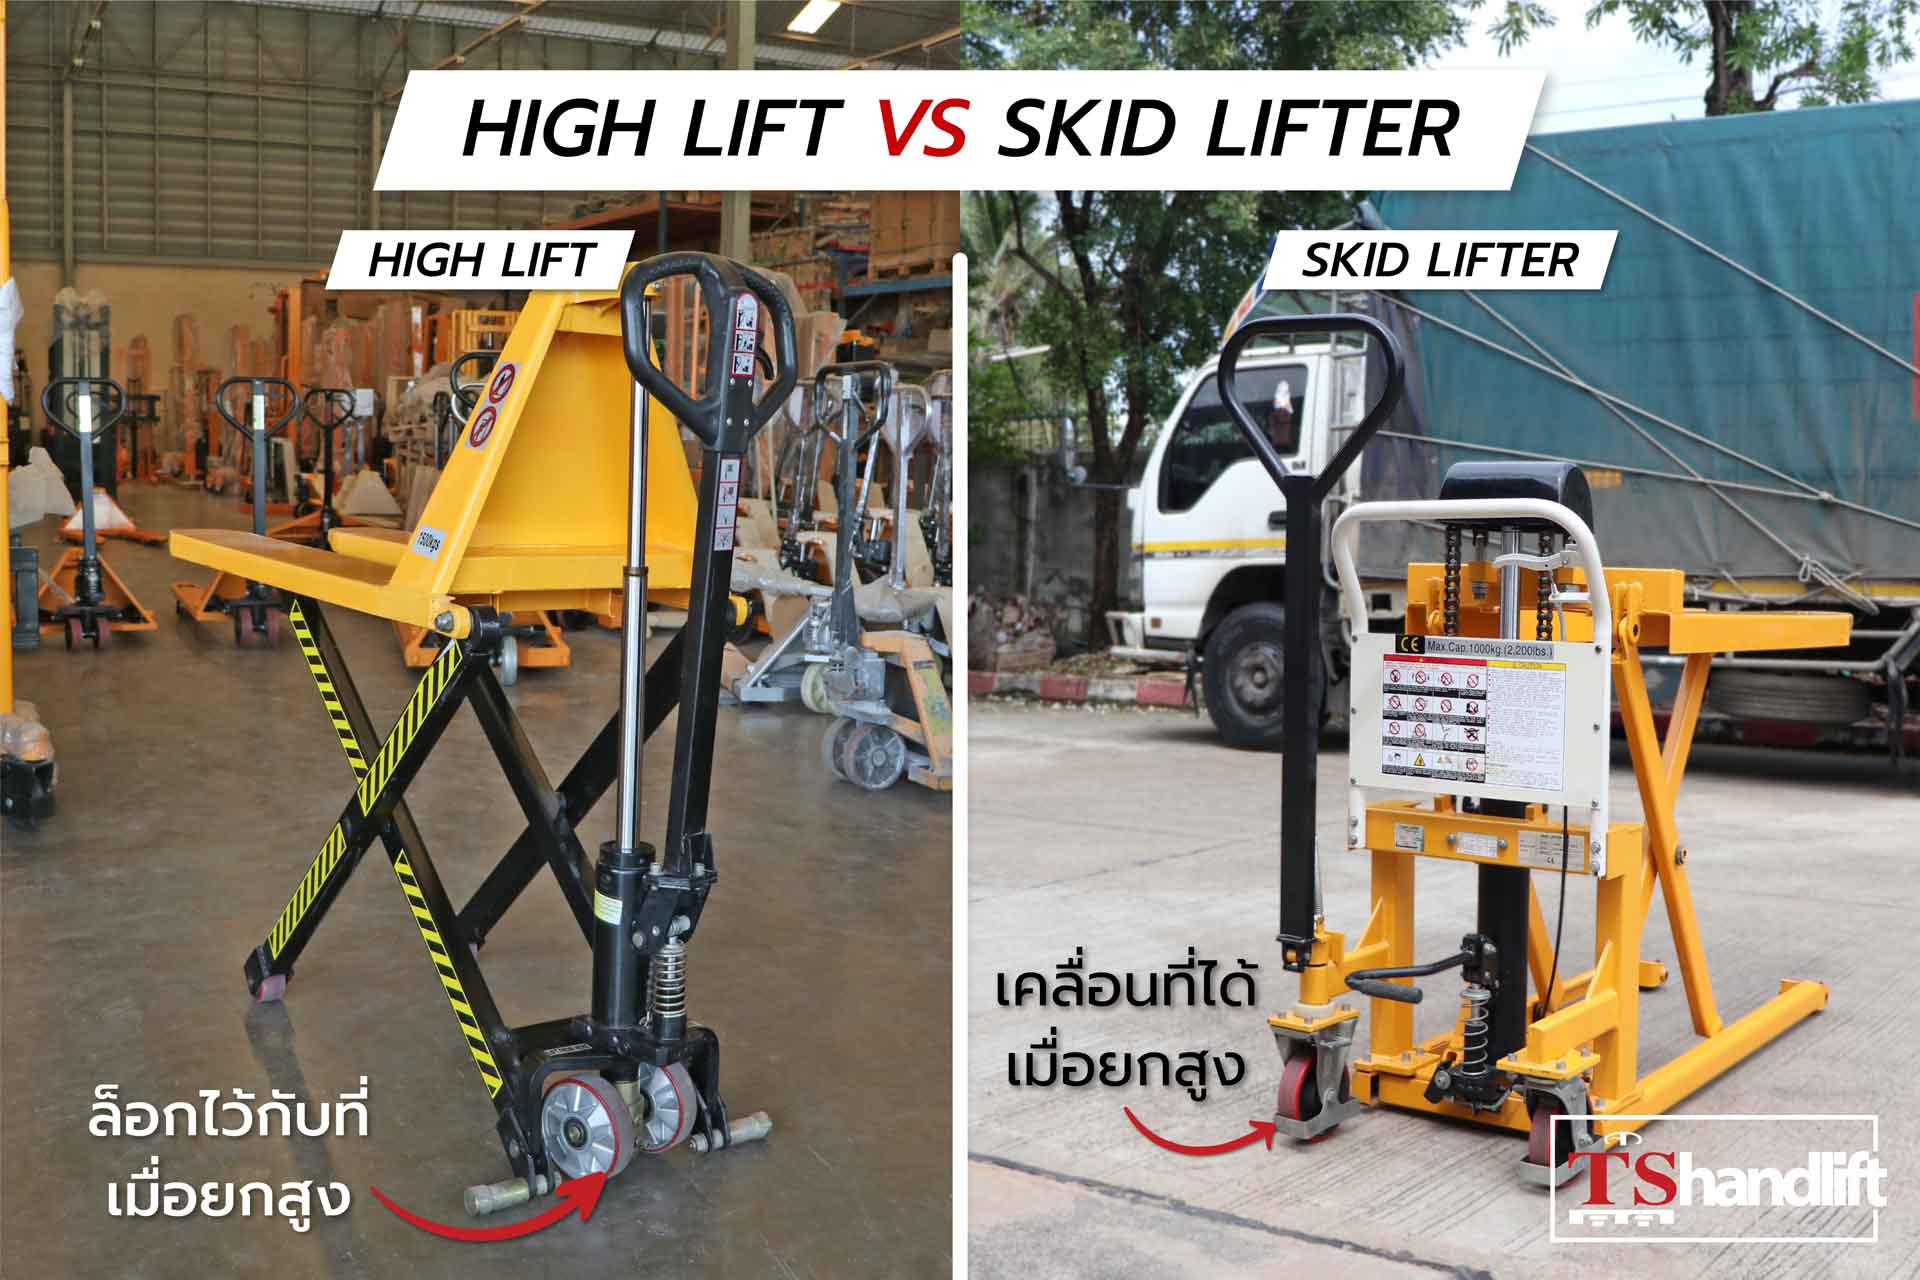 เปรียบเทียบการใช้งาน high lift กับ skid lifter